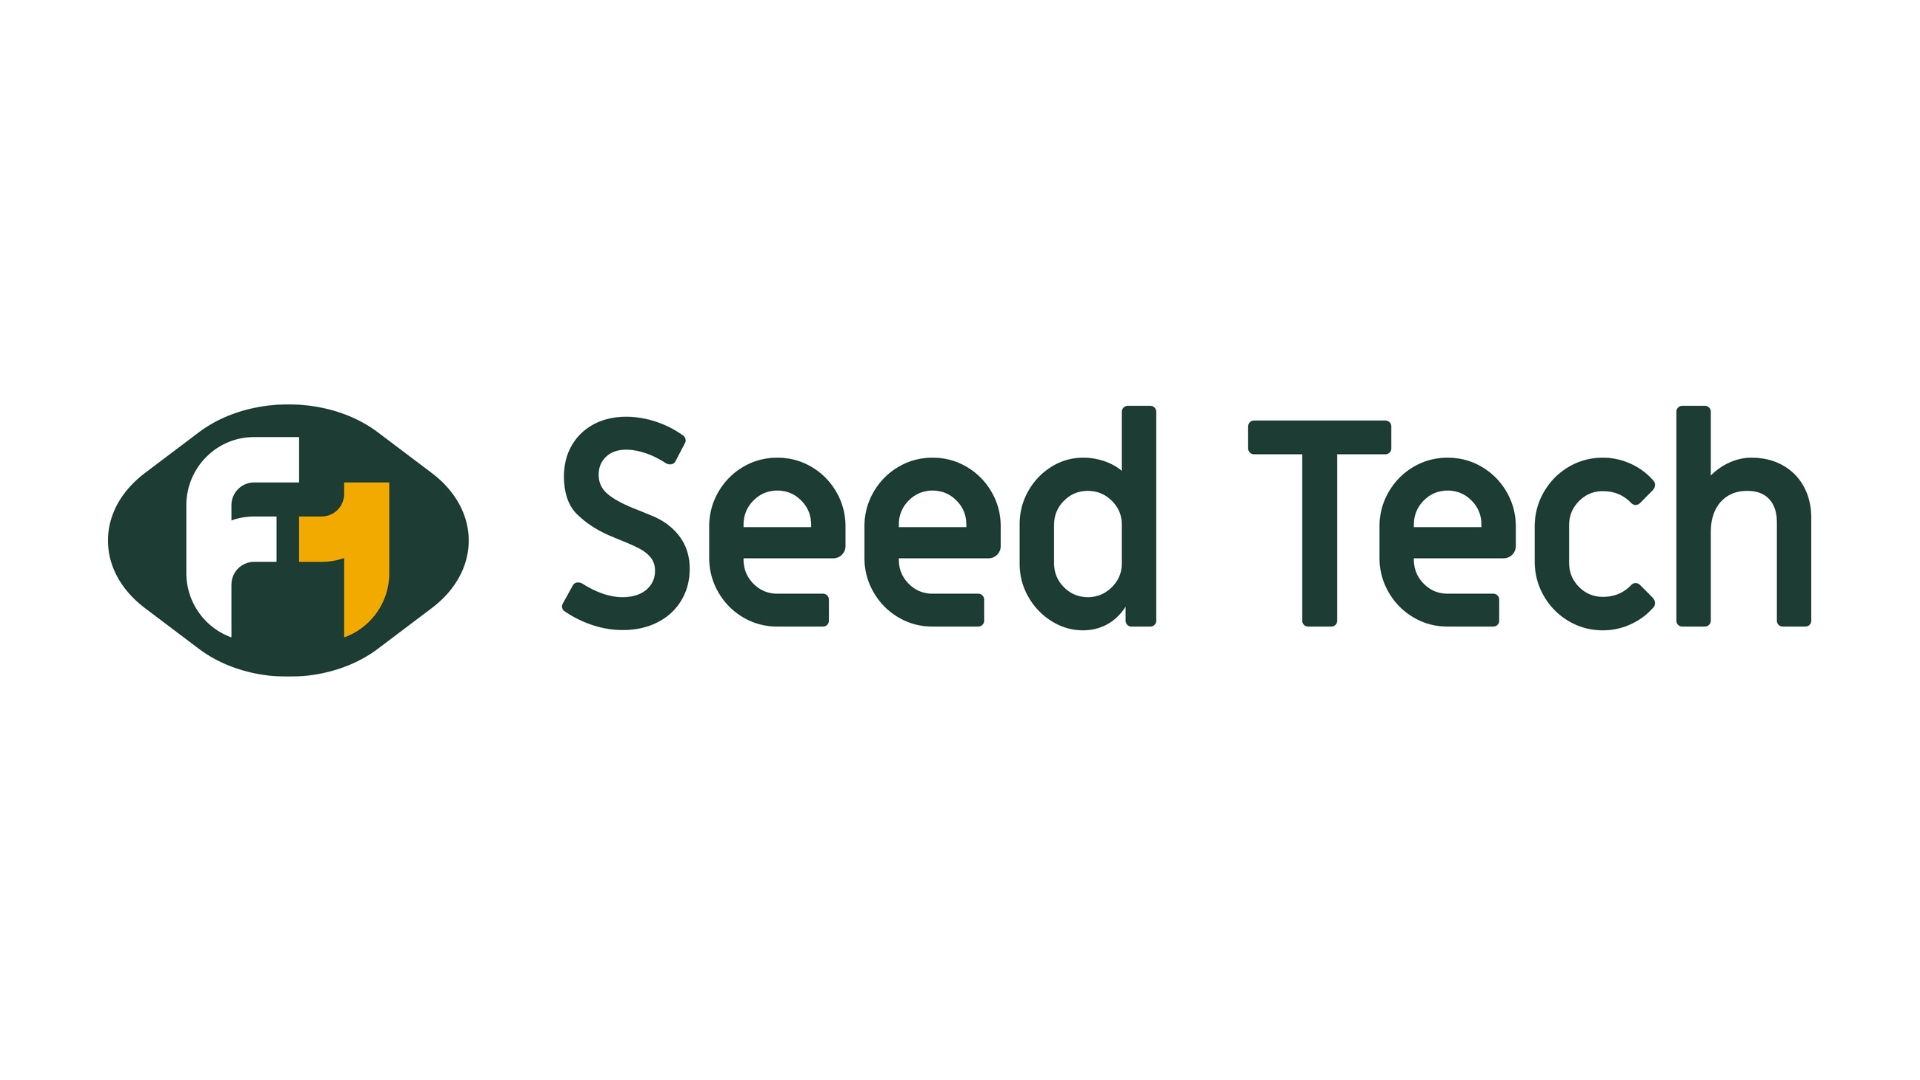 F1 SeedTech Logo